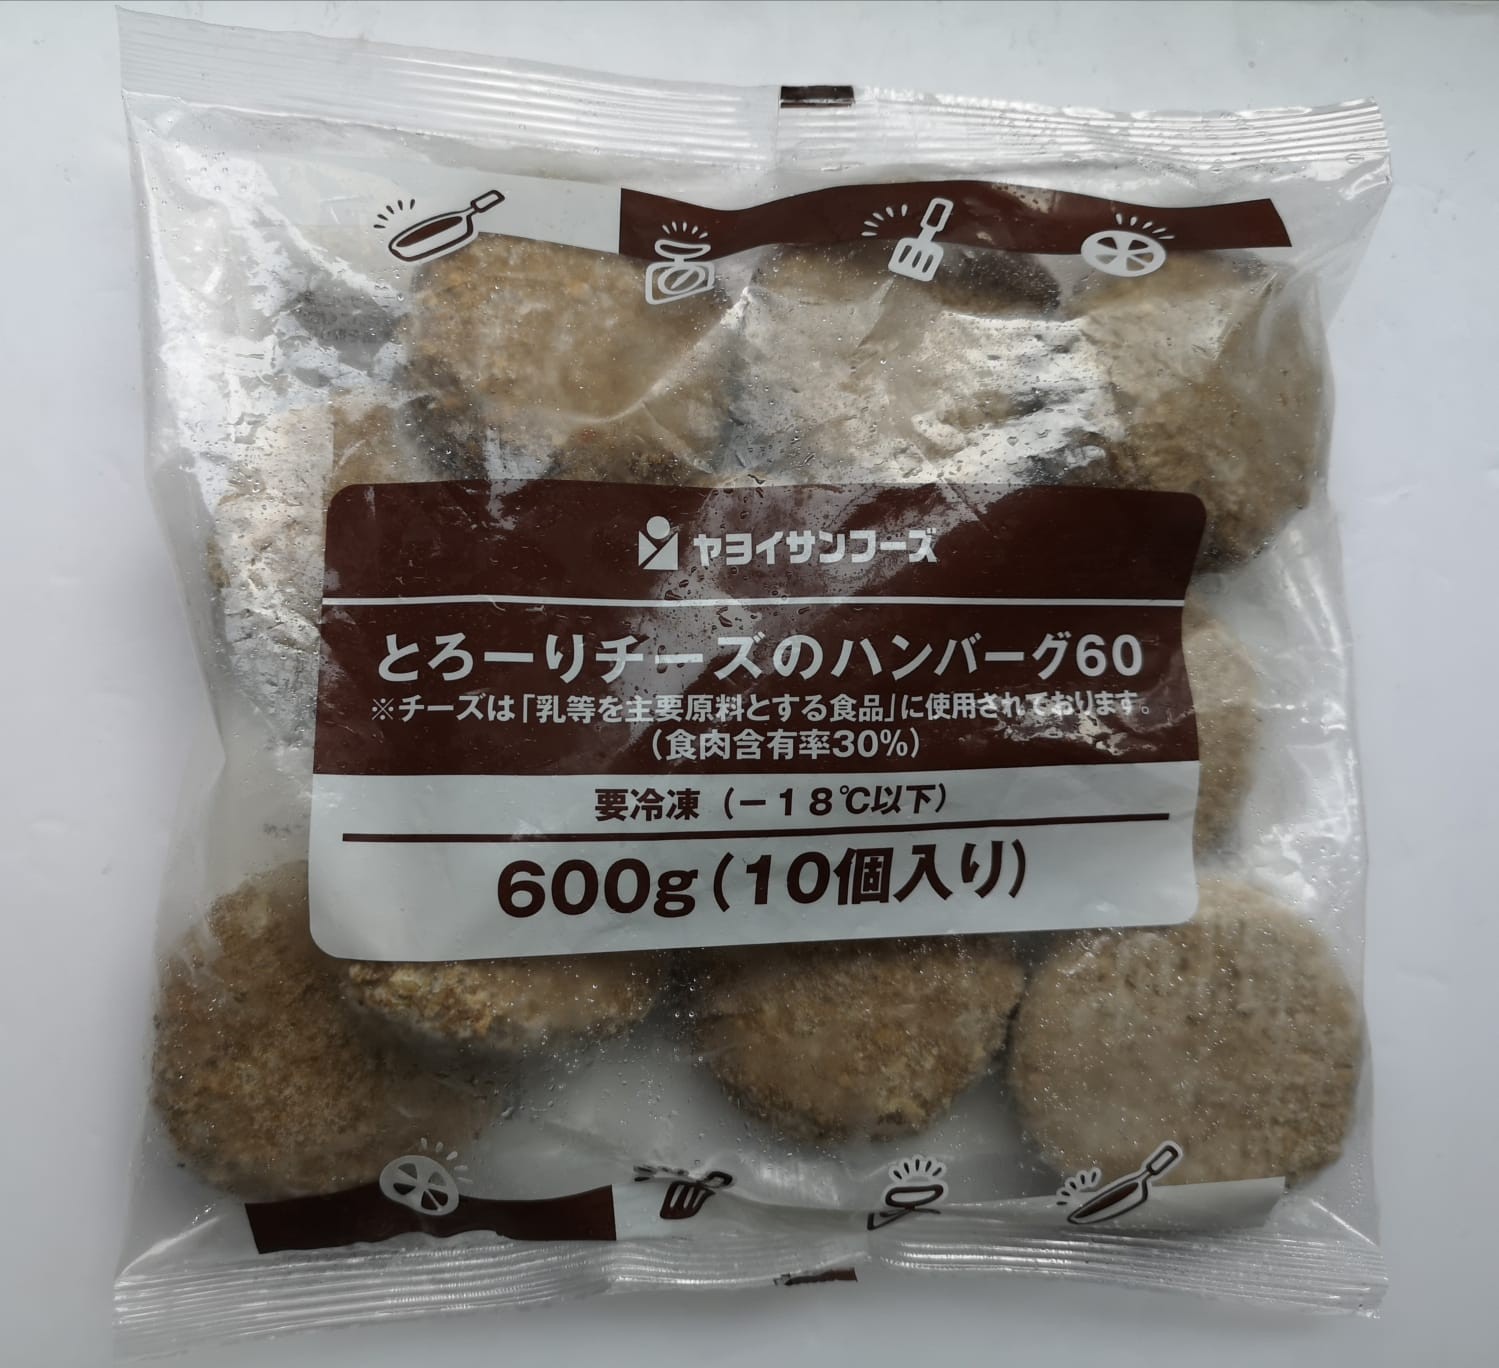 日本芝士漢堡扒.600g/包(內10個裝) 適合煎,炸,焗,氣炸爐等